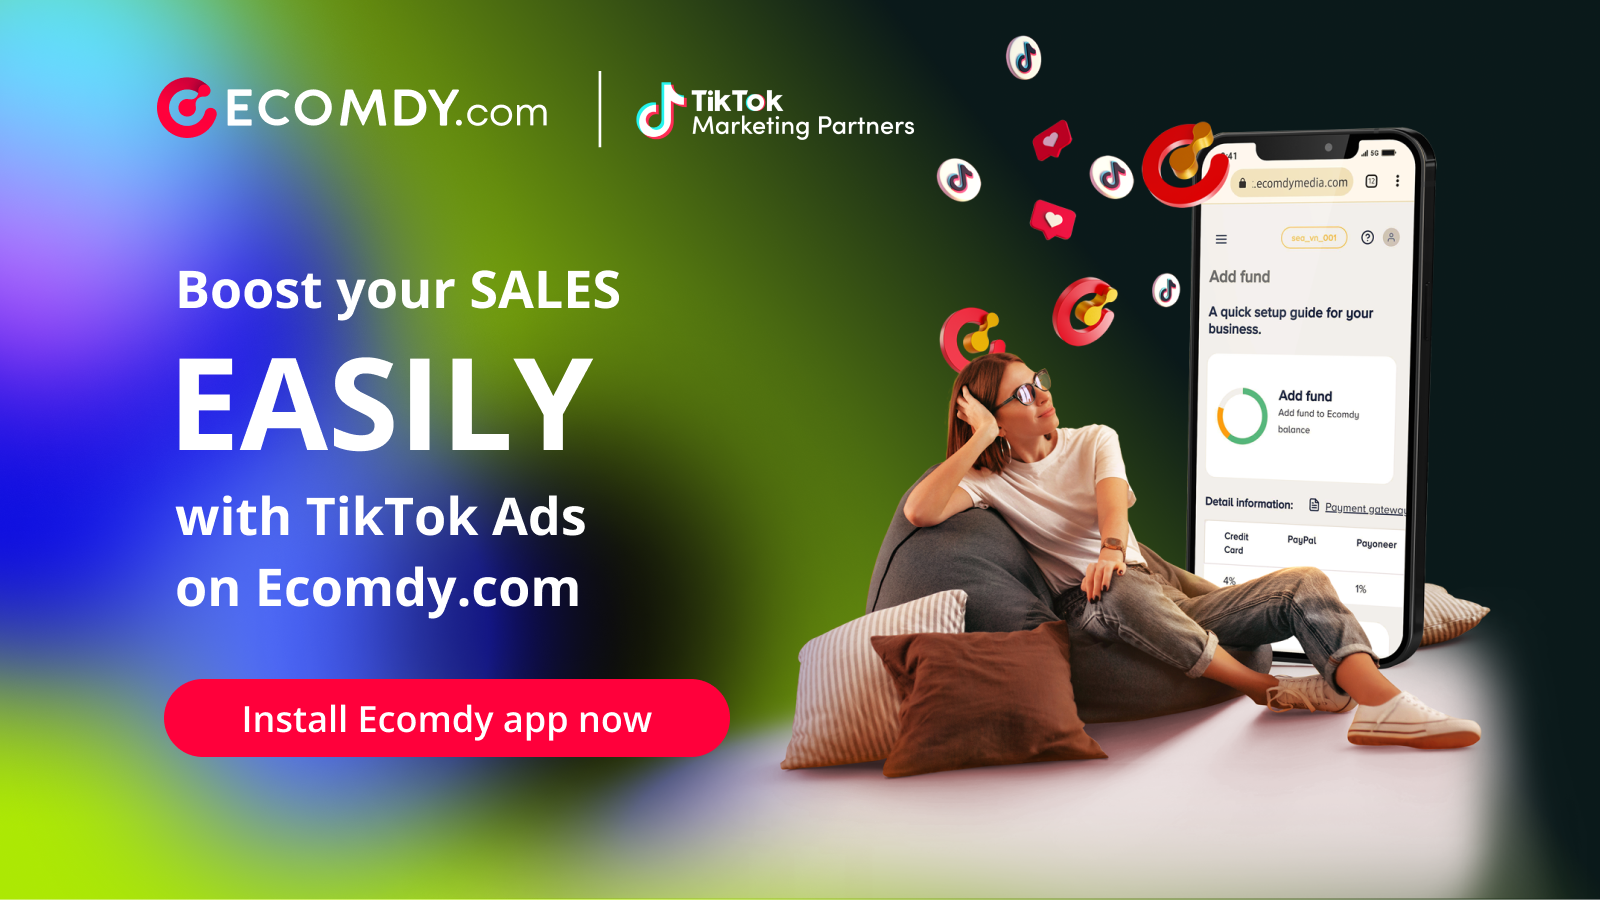 Öka försäljningen enkelt med TikTok-annonser på Ecomdy.com